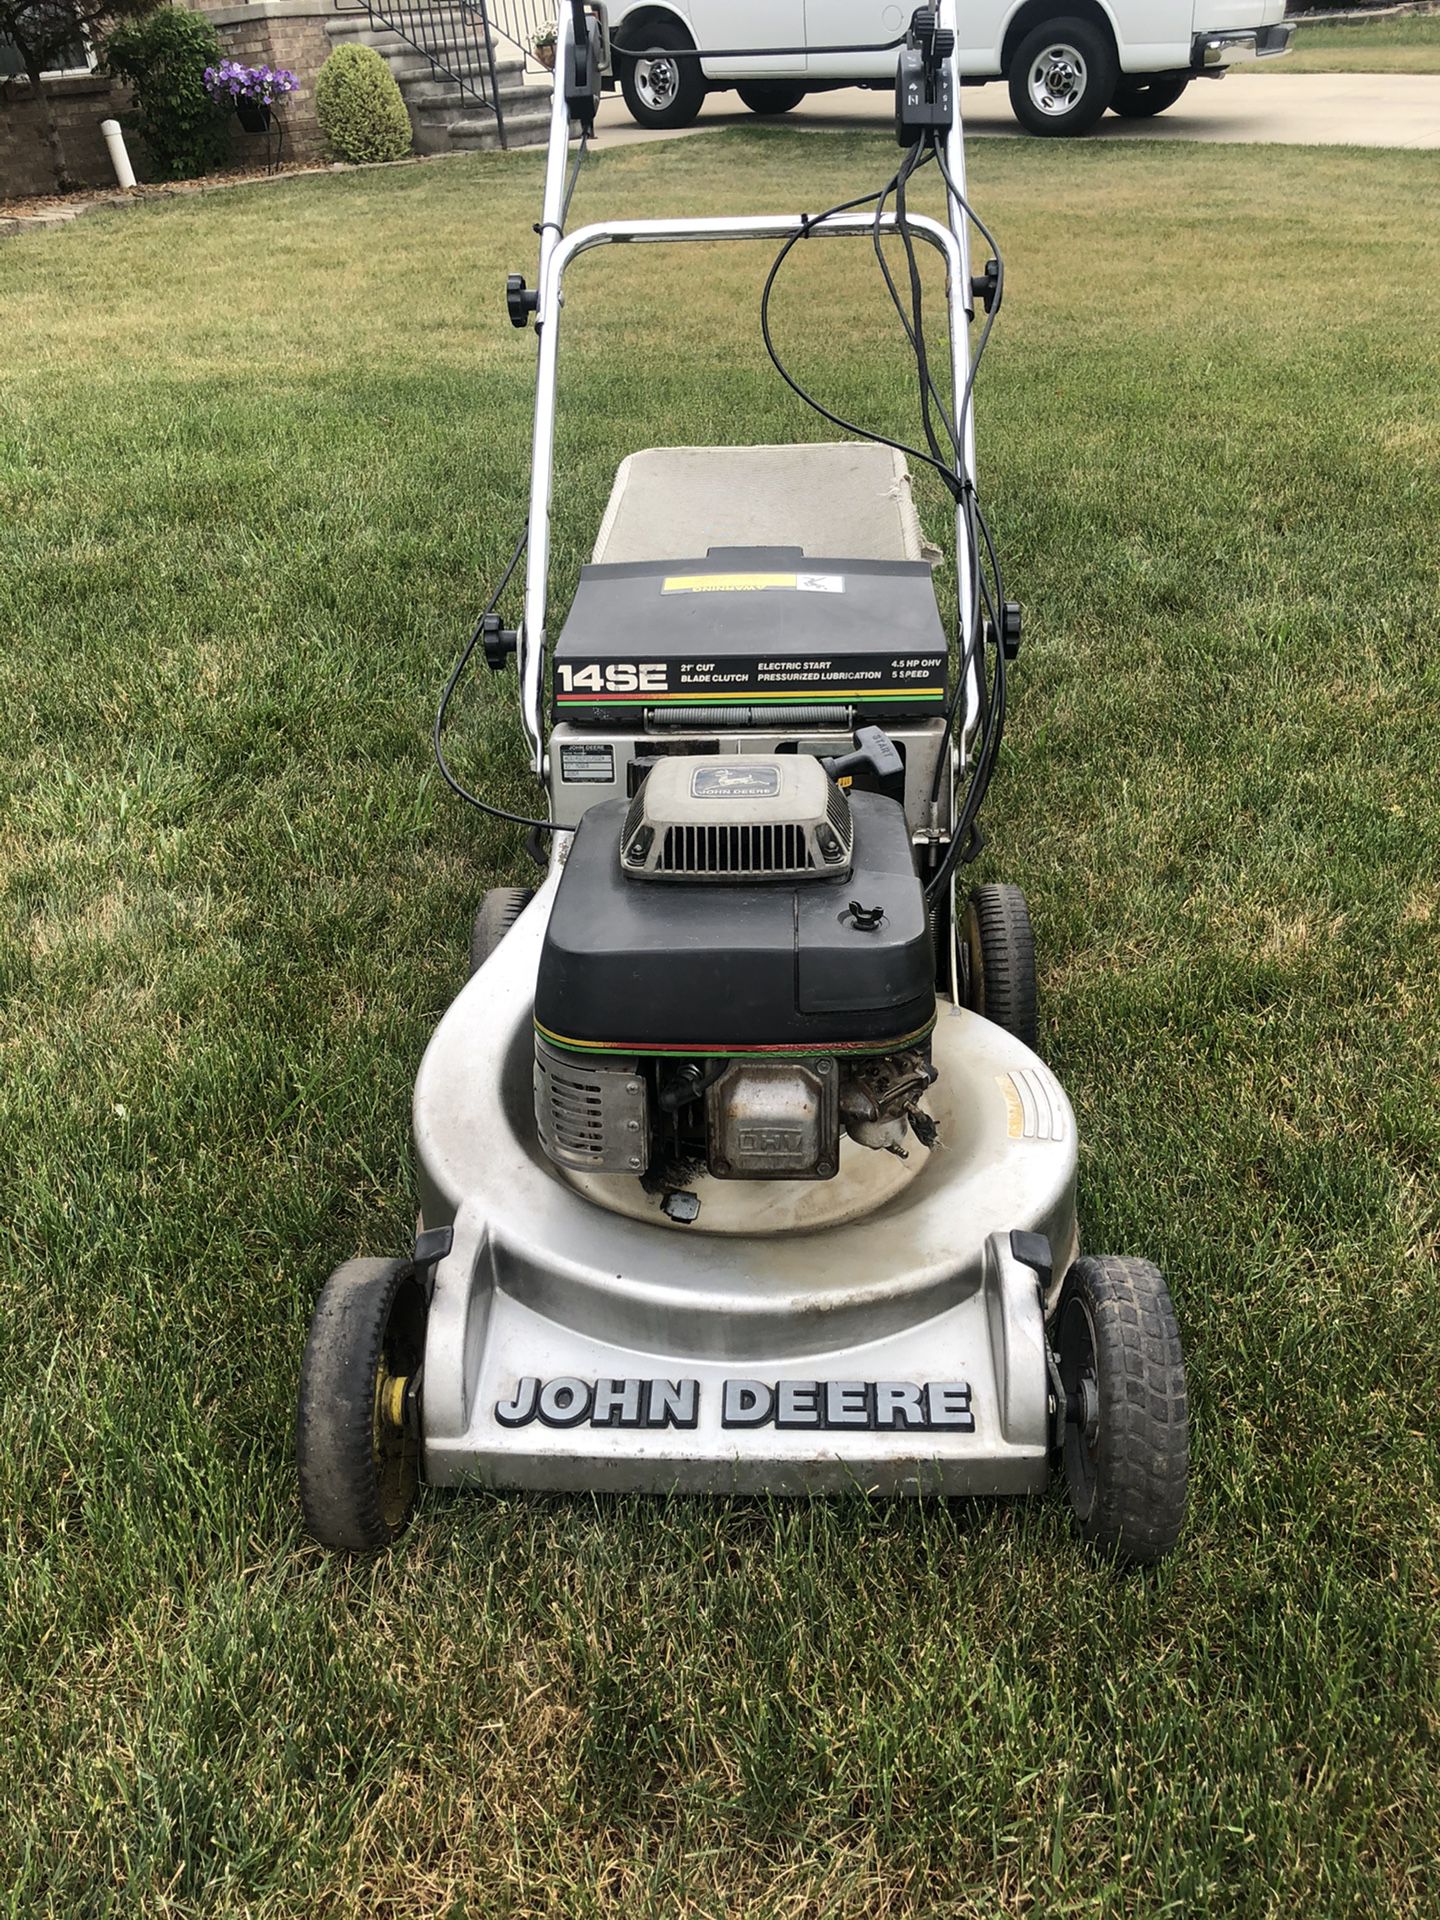 John Deere 14SE self propelled bagging lawnmower.